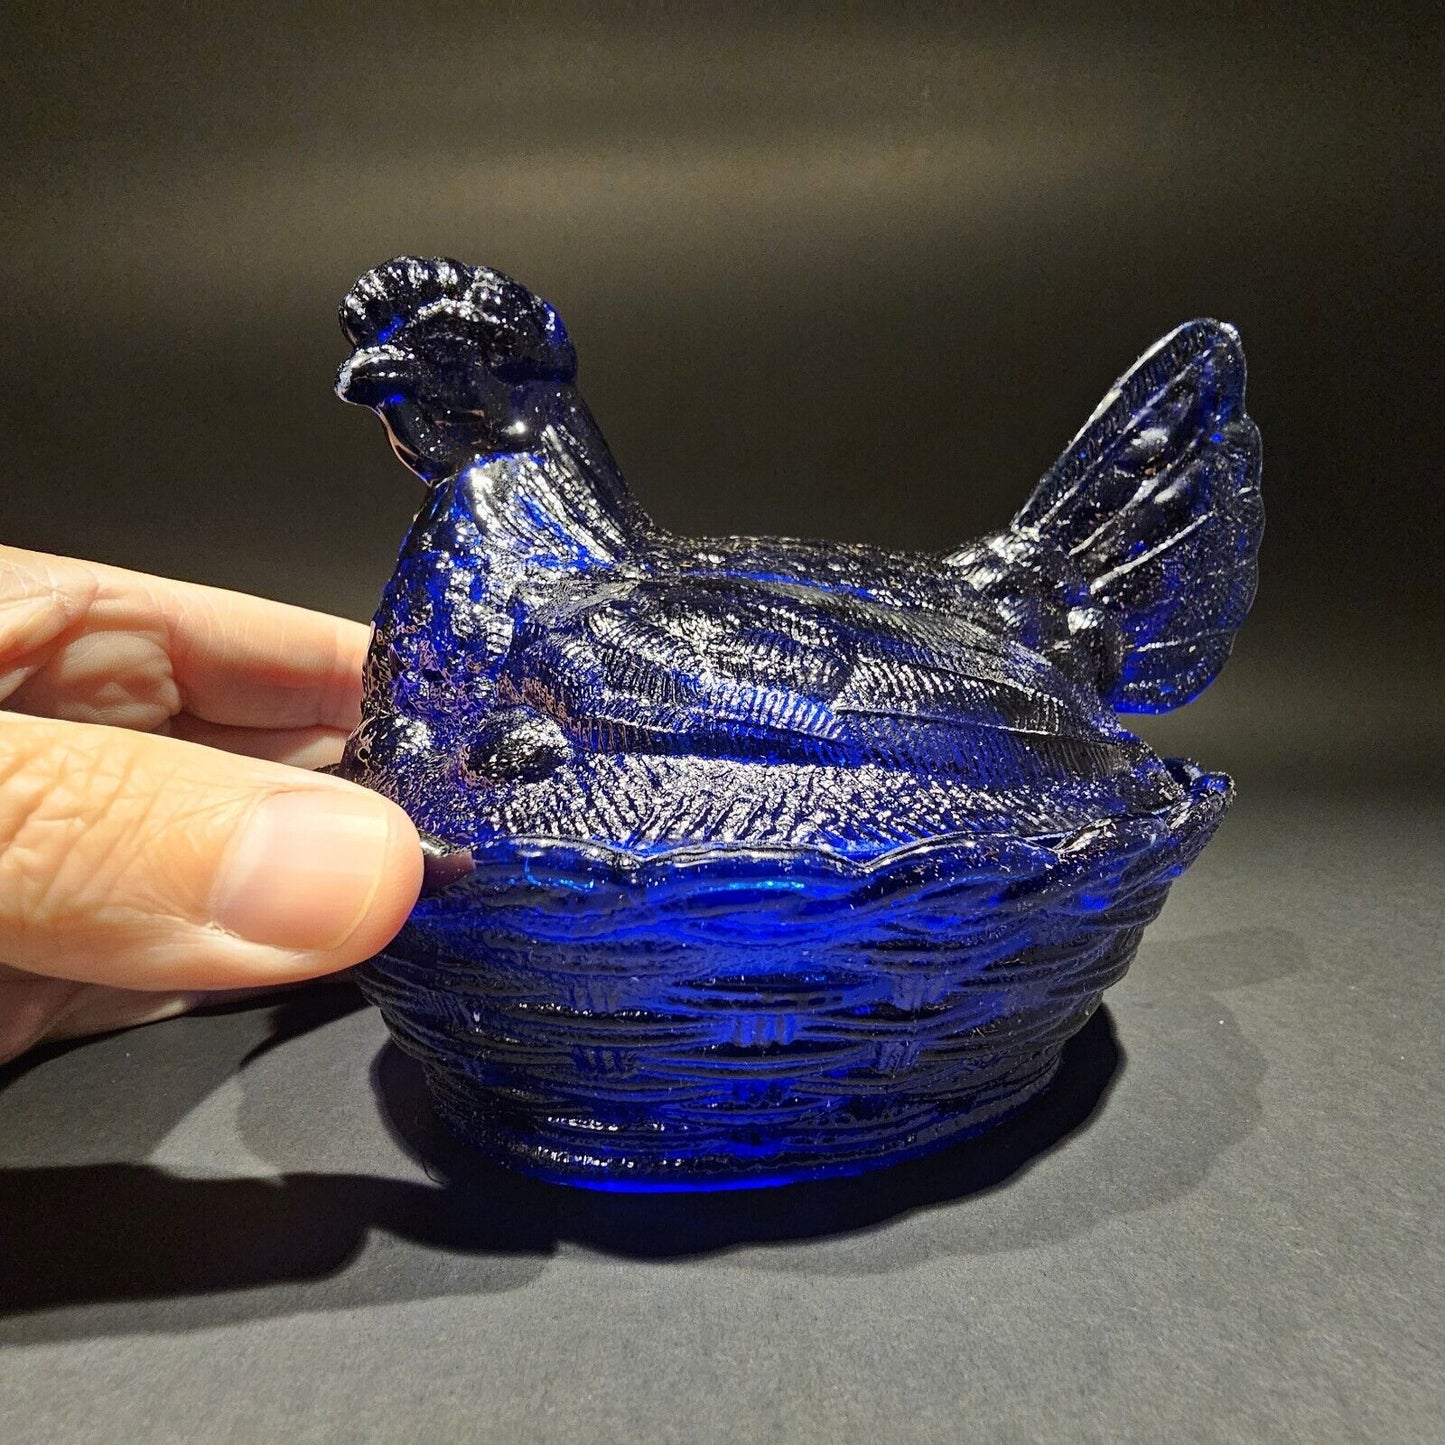 Antique Vintage Style Cobalt Blue Depression Glass Chicken Hen On Nest Dish